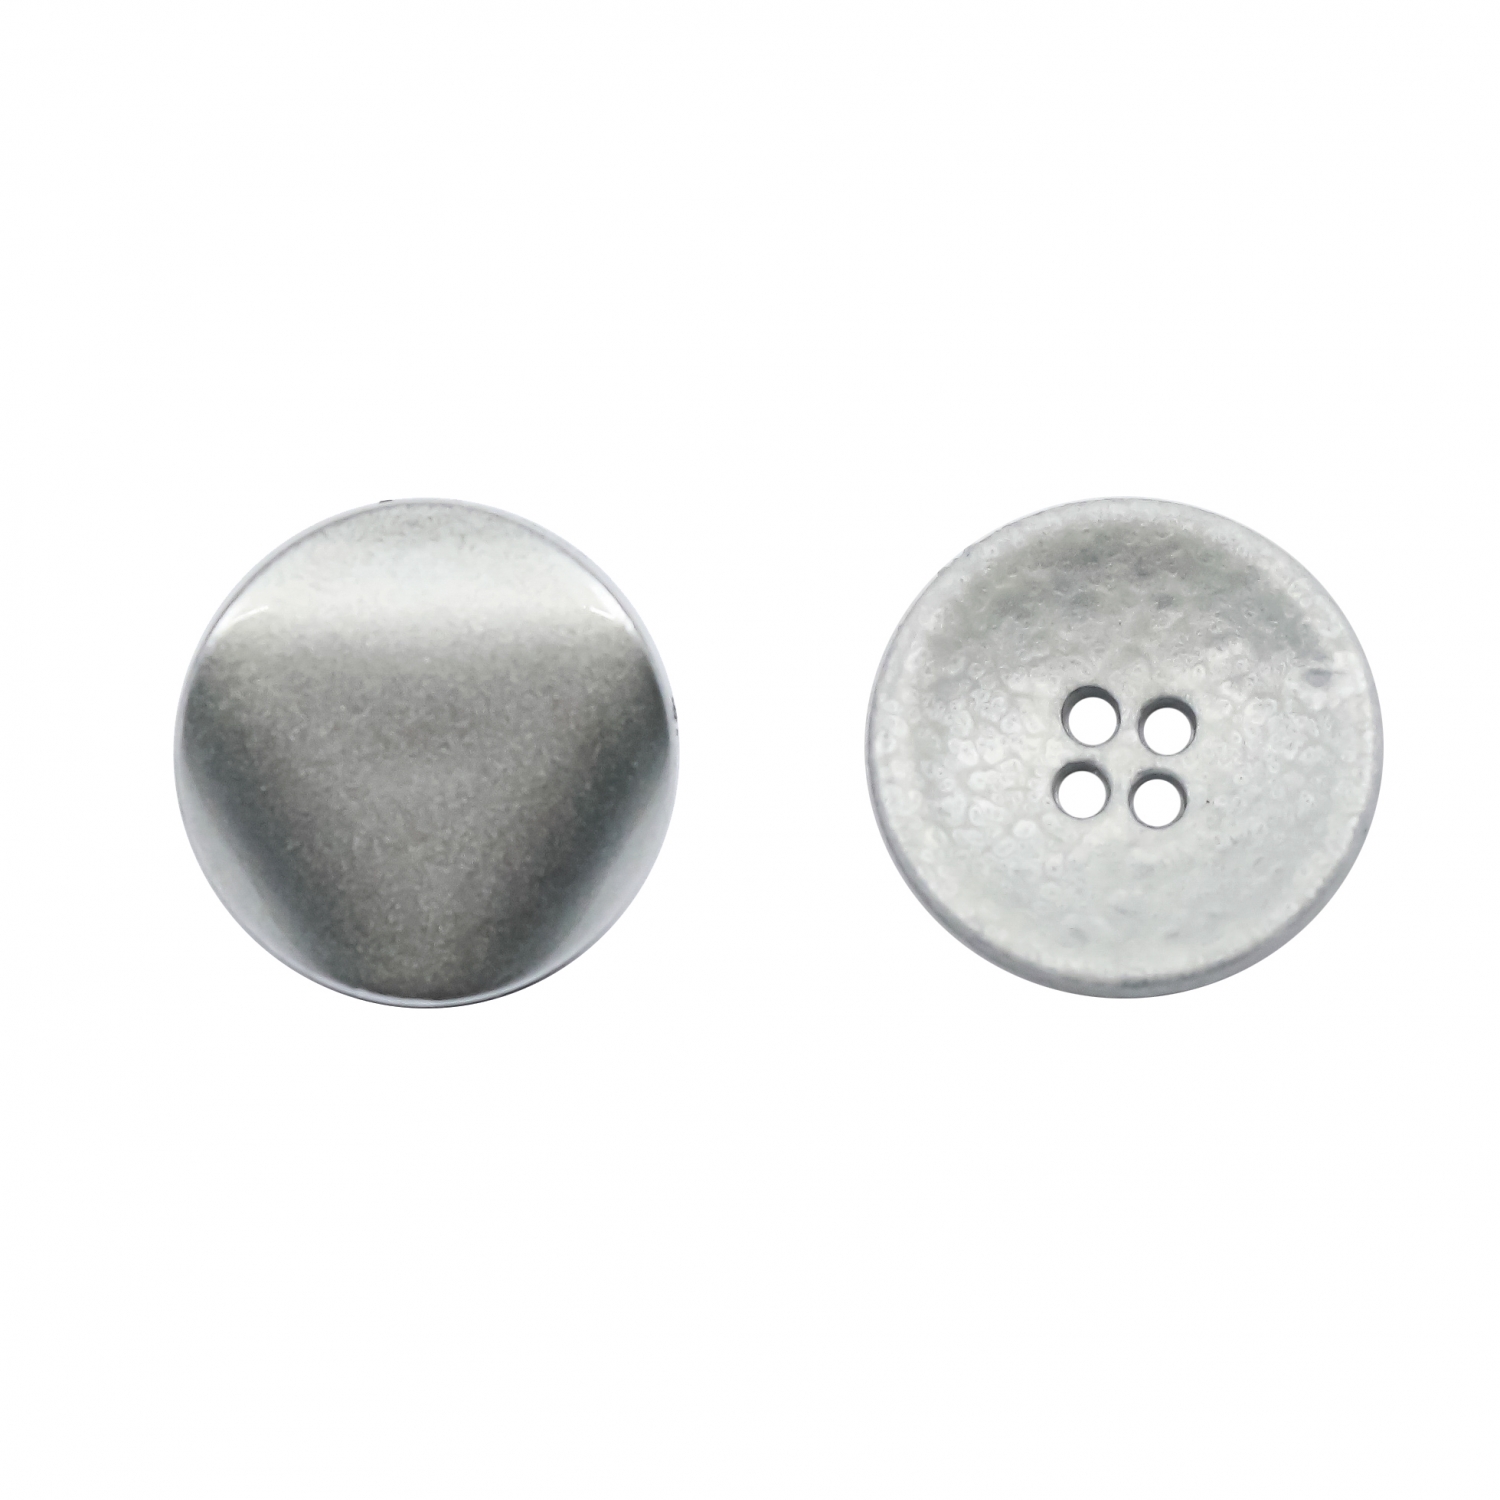 Plastic Buttons, Various Models (100 pcs/pack)Code: E1000-5